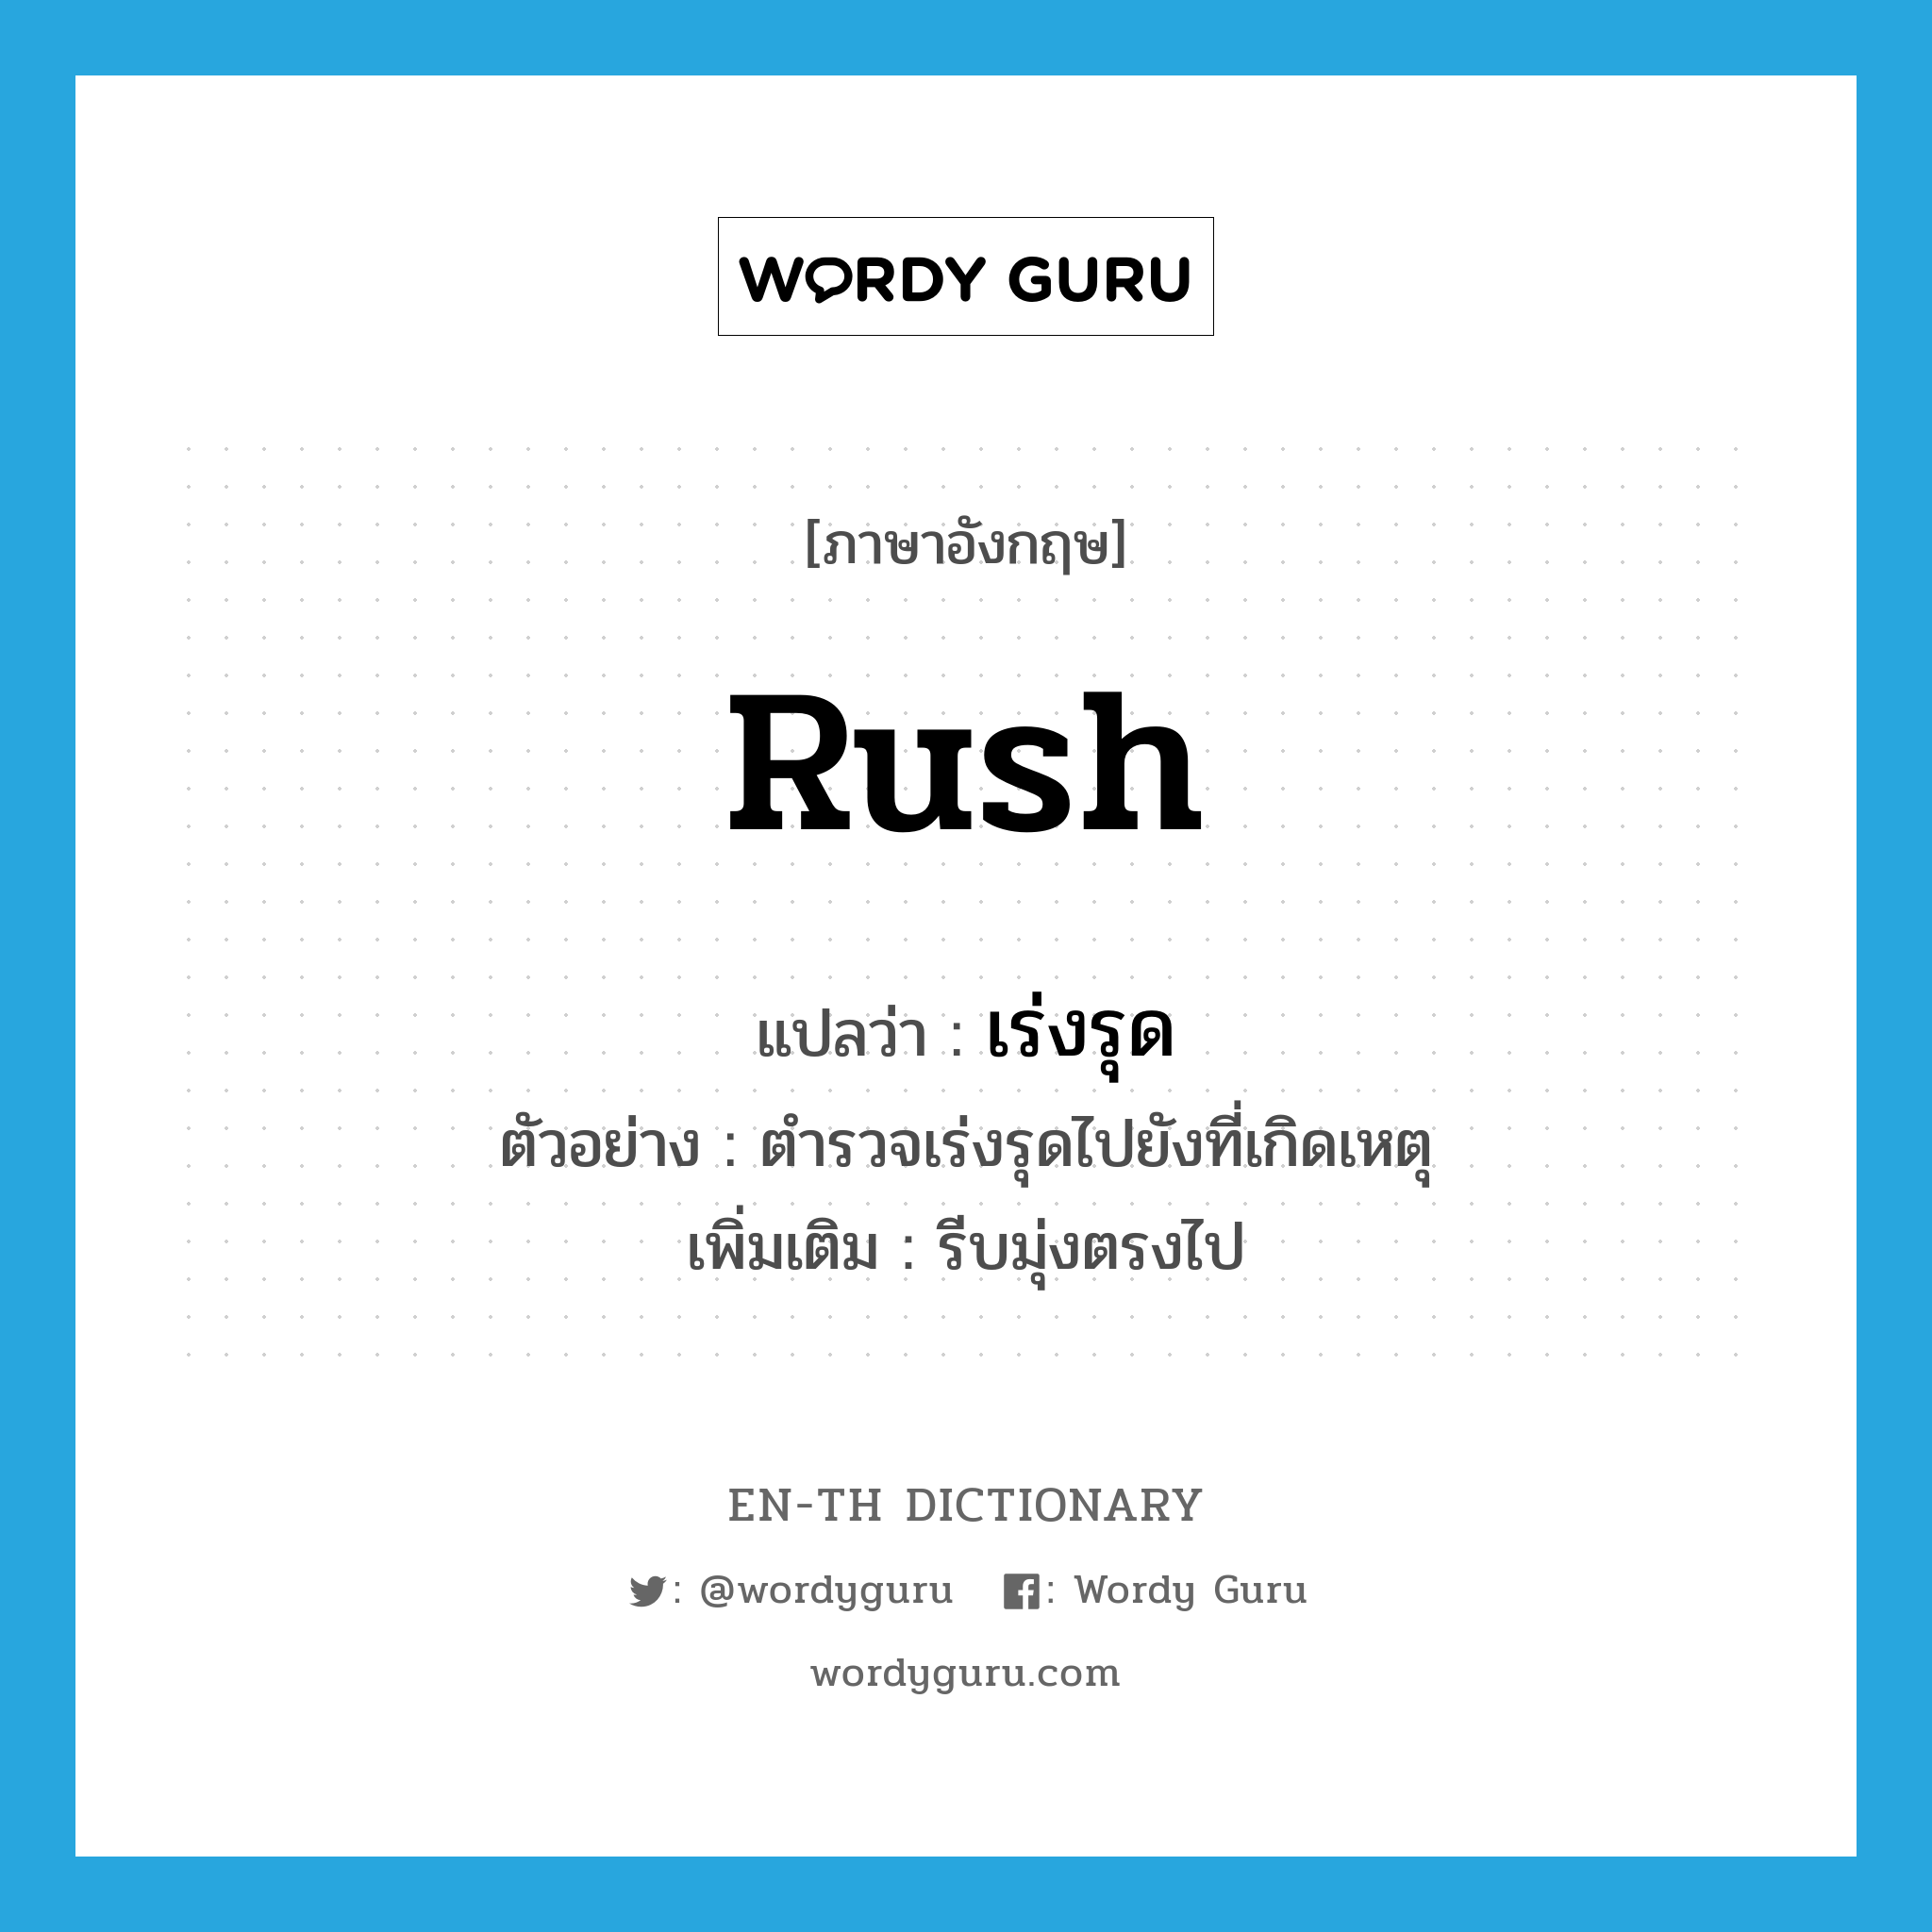 rush แปลว่า?, คำศัพท์ภาษาอังกฤษ rush แปลว่า เร่งรุด ประเภท V ตัวอย่าง ตำรวจเร่งรุดไปยังที่เกิดเหตุ เพิ่มเติม รีบมุ่งตรงไป หมวด V